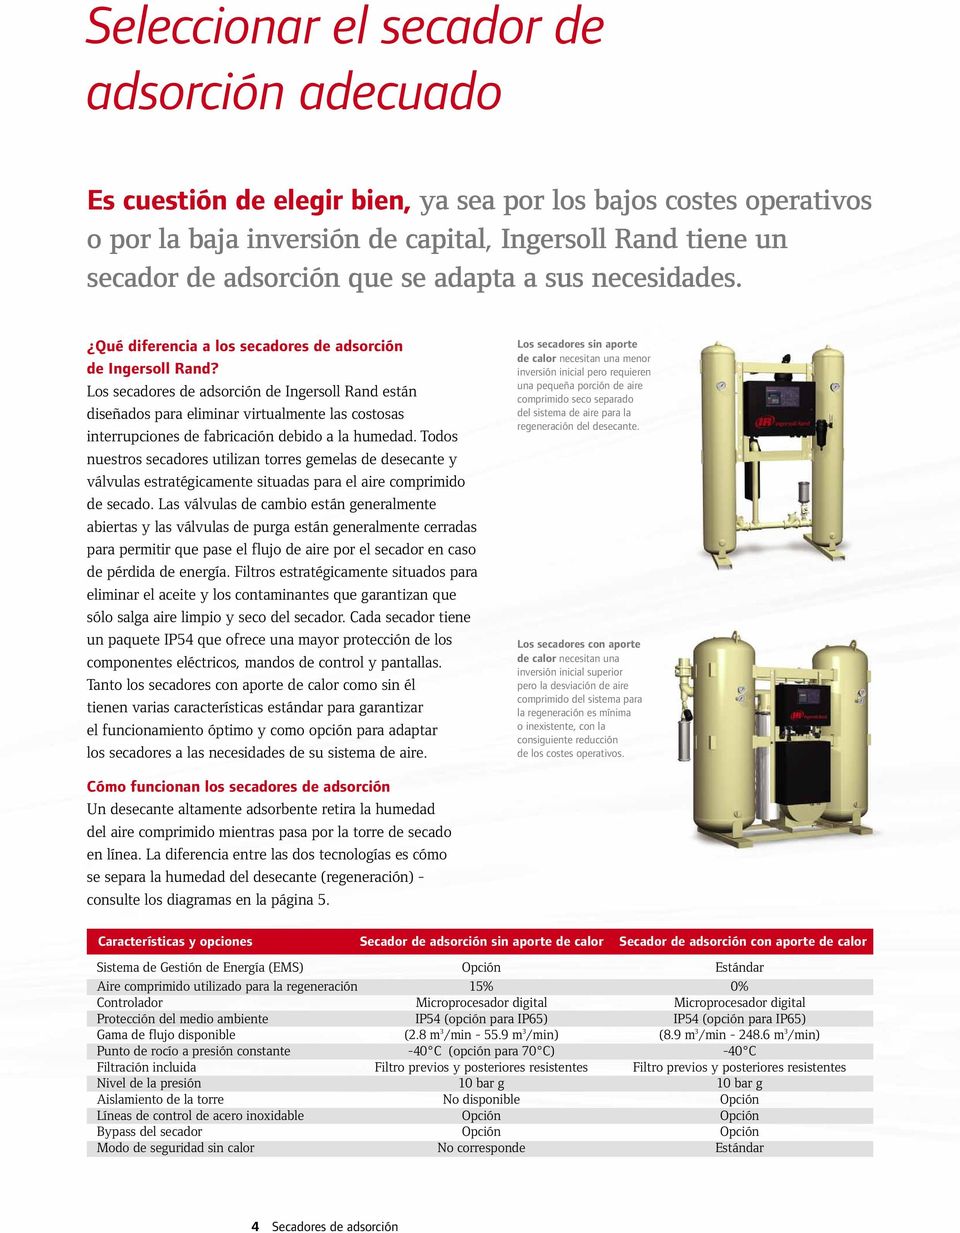 Los secadores de adsorción de Ingersoll Rand están diseñados para eliminar virtualmente las costosas interrupciones de fabricación debido a la humedad.